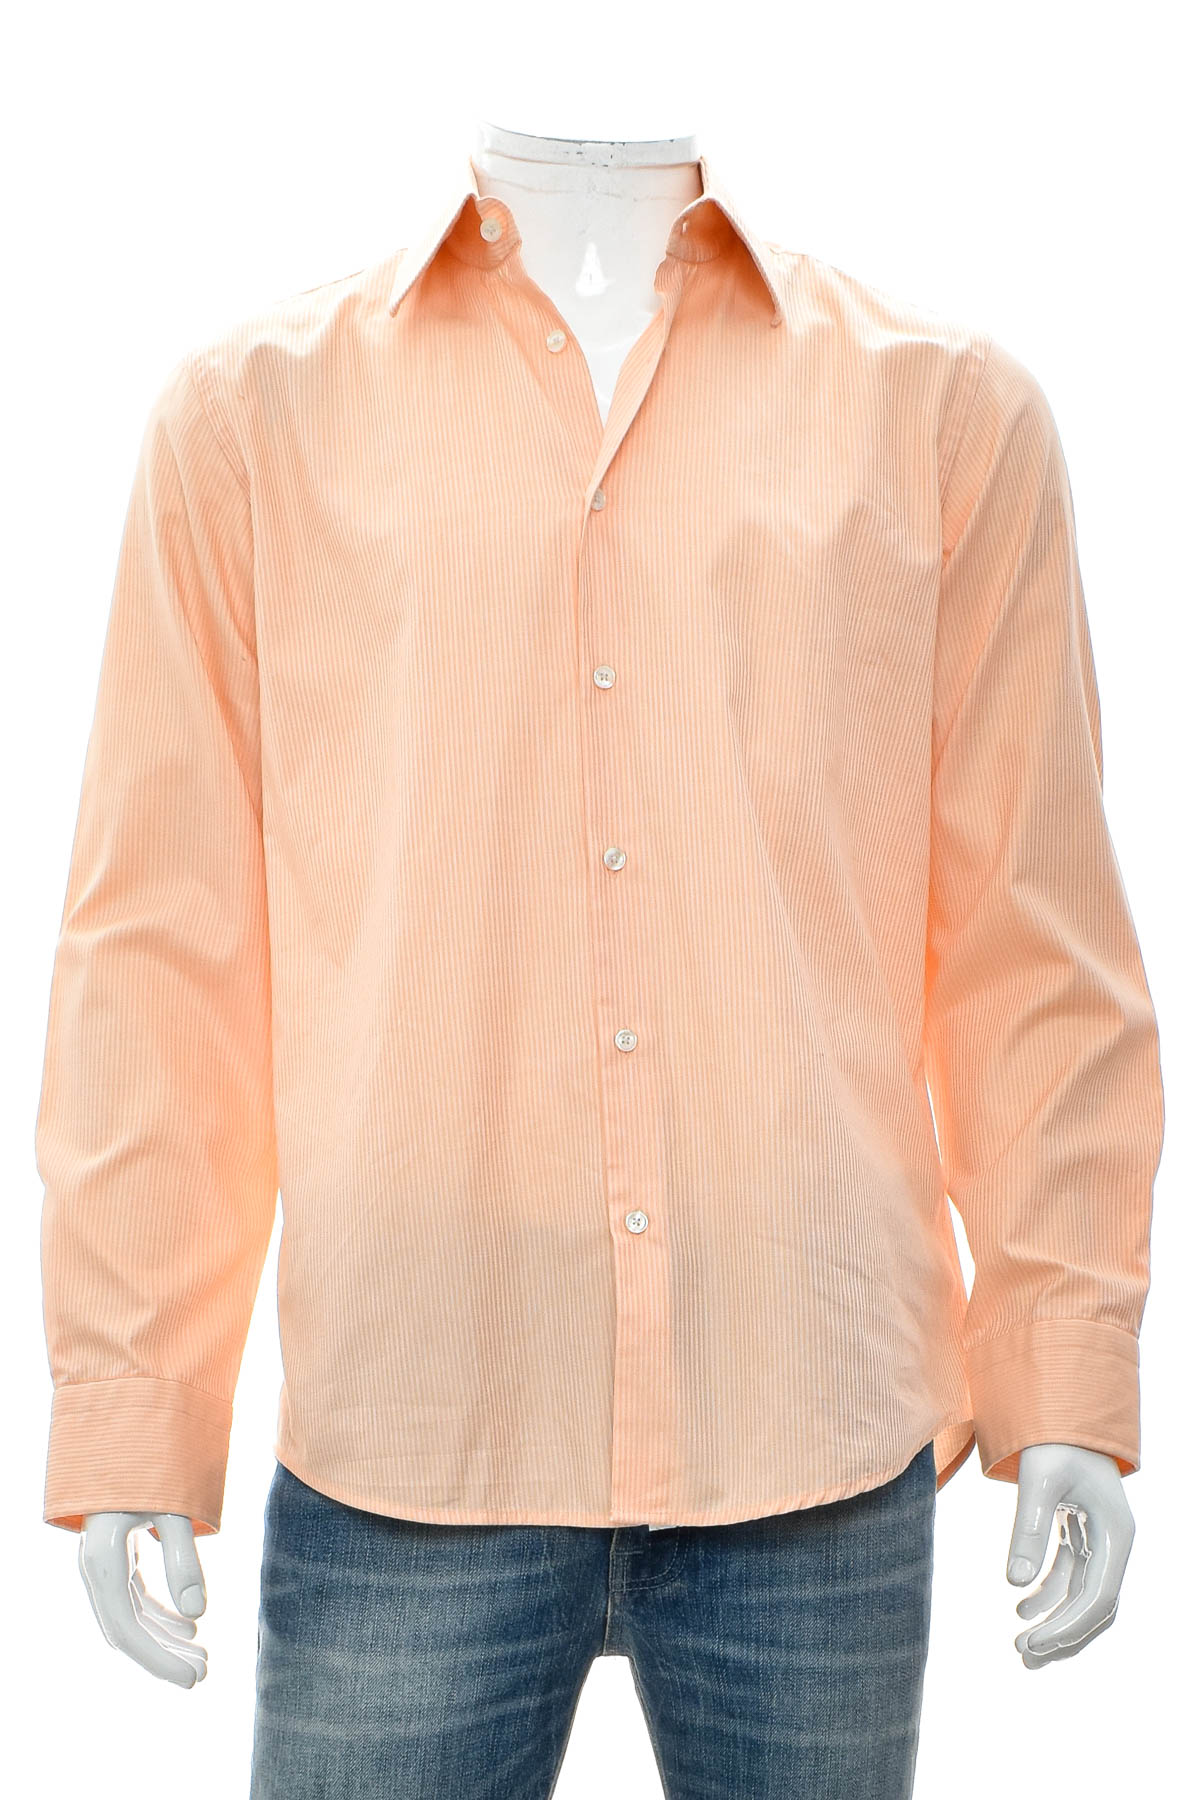 Ανδρικό πουκάμισο - HUGO BOSS - 0